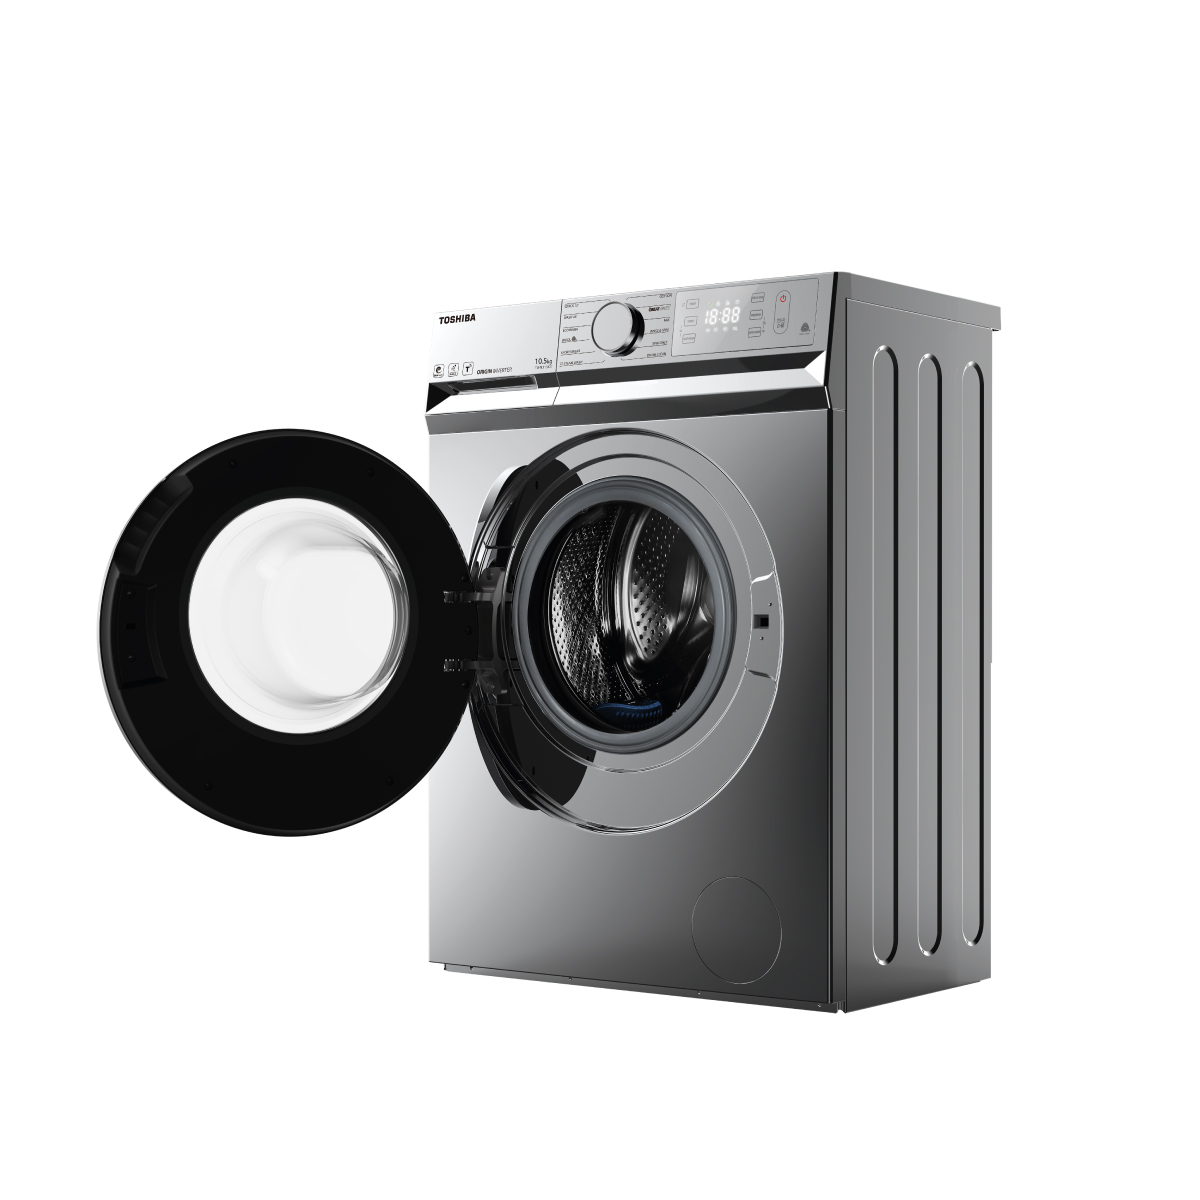 Máy giặt toshiba: Với công nghệ tiên tiến và hiệu suất hoạt động tốt, máy giặt Toshiba sẽ giúp bạn giặt sạch và tiết kiệm thời gian. Hãy xem ngay hình ảnh liên quan để tìm hiểu thêm về những tính năng thông minh và tối ưu hóa của sản phẩm.